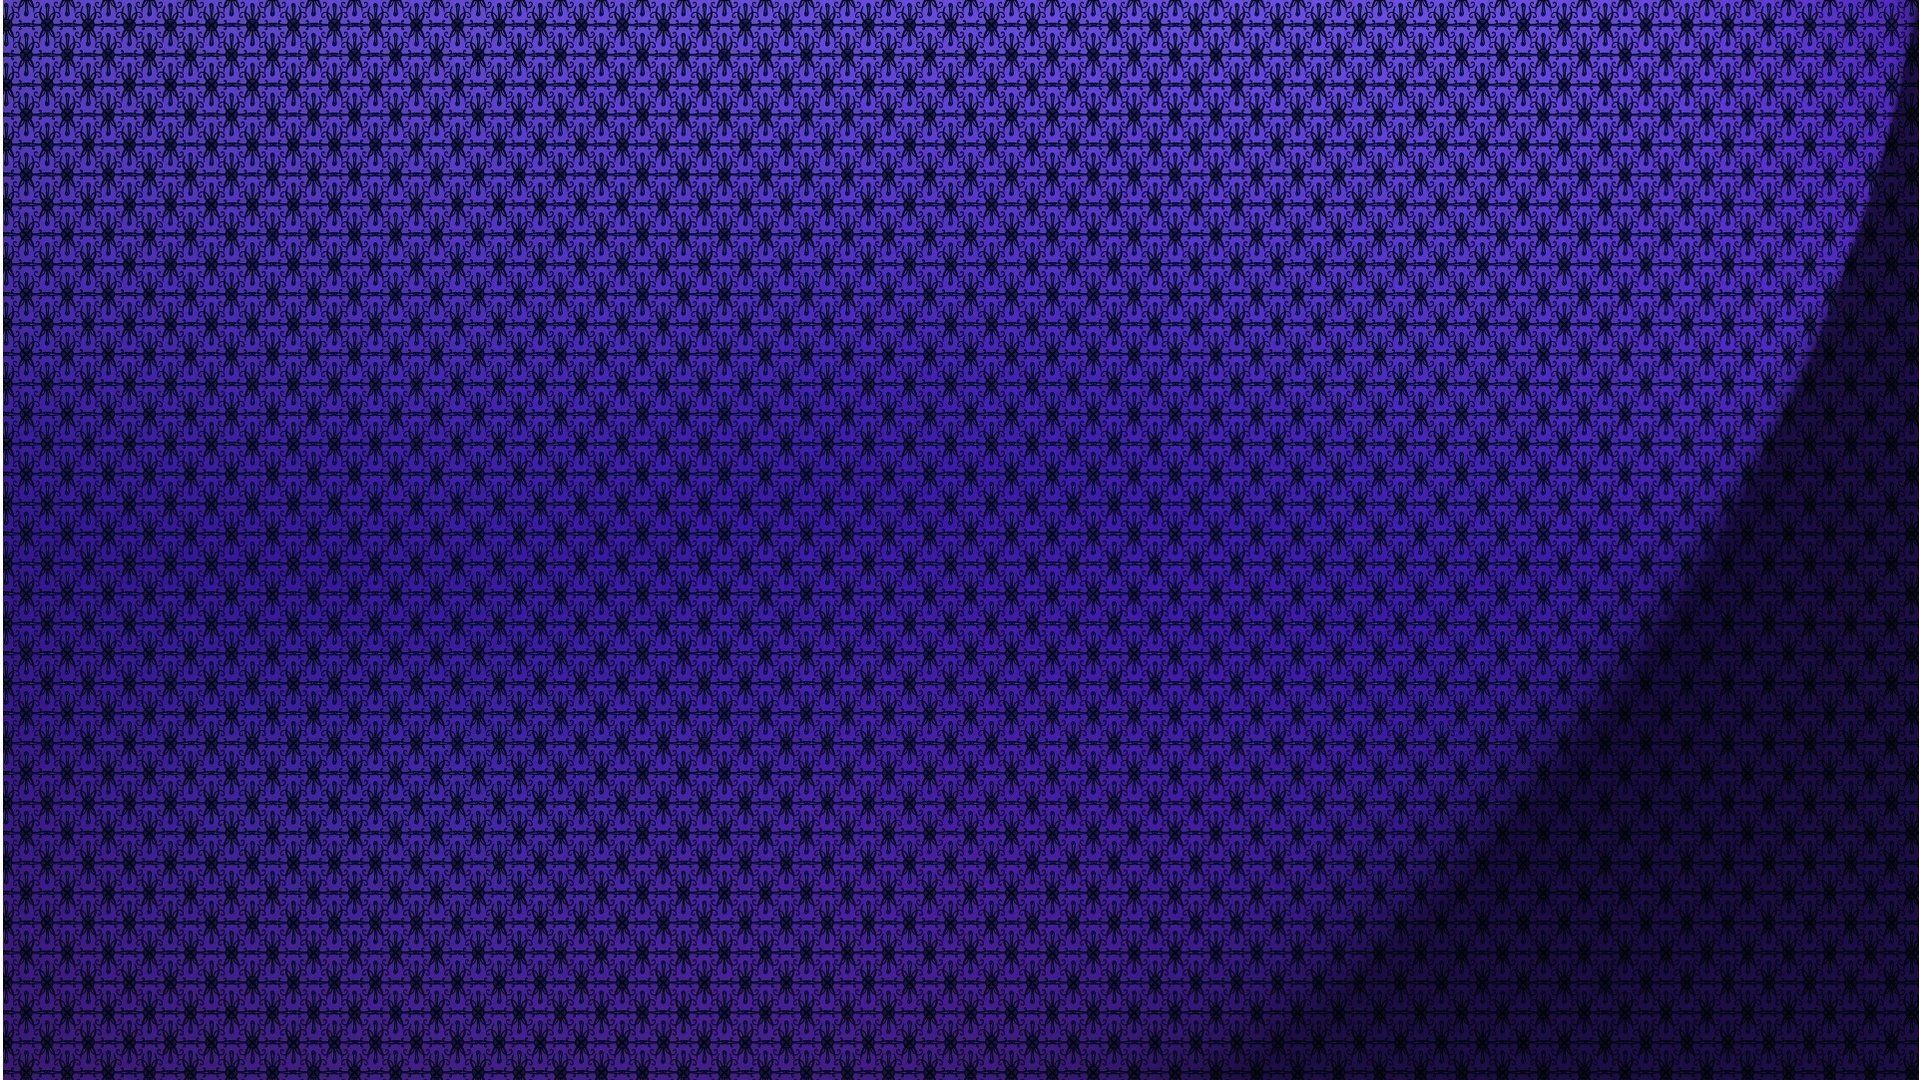 Wallpaper Violet Pattern 1920 X 1080 Full Hd - 1920 x 1080 - Full ...